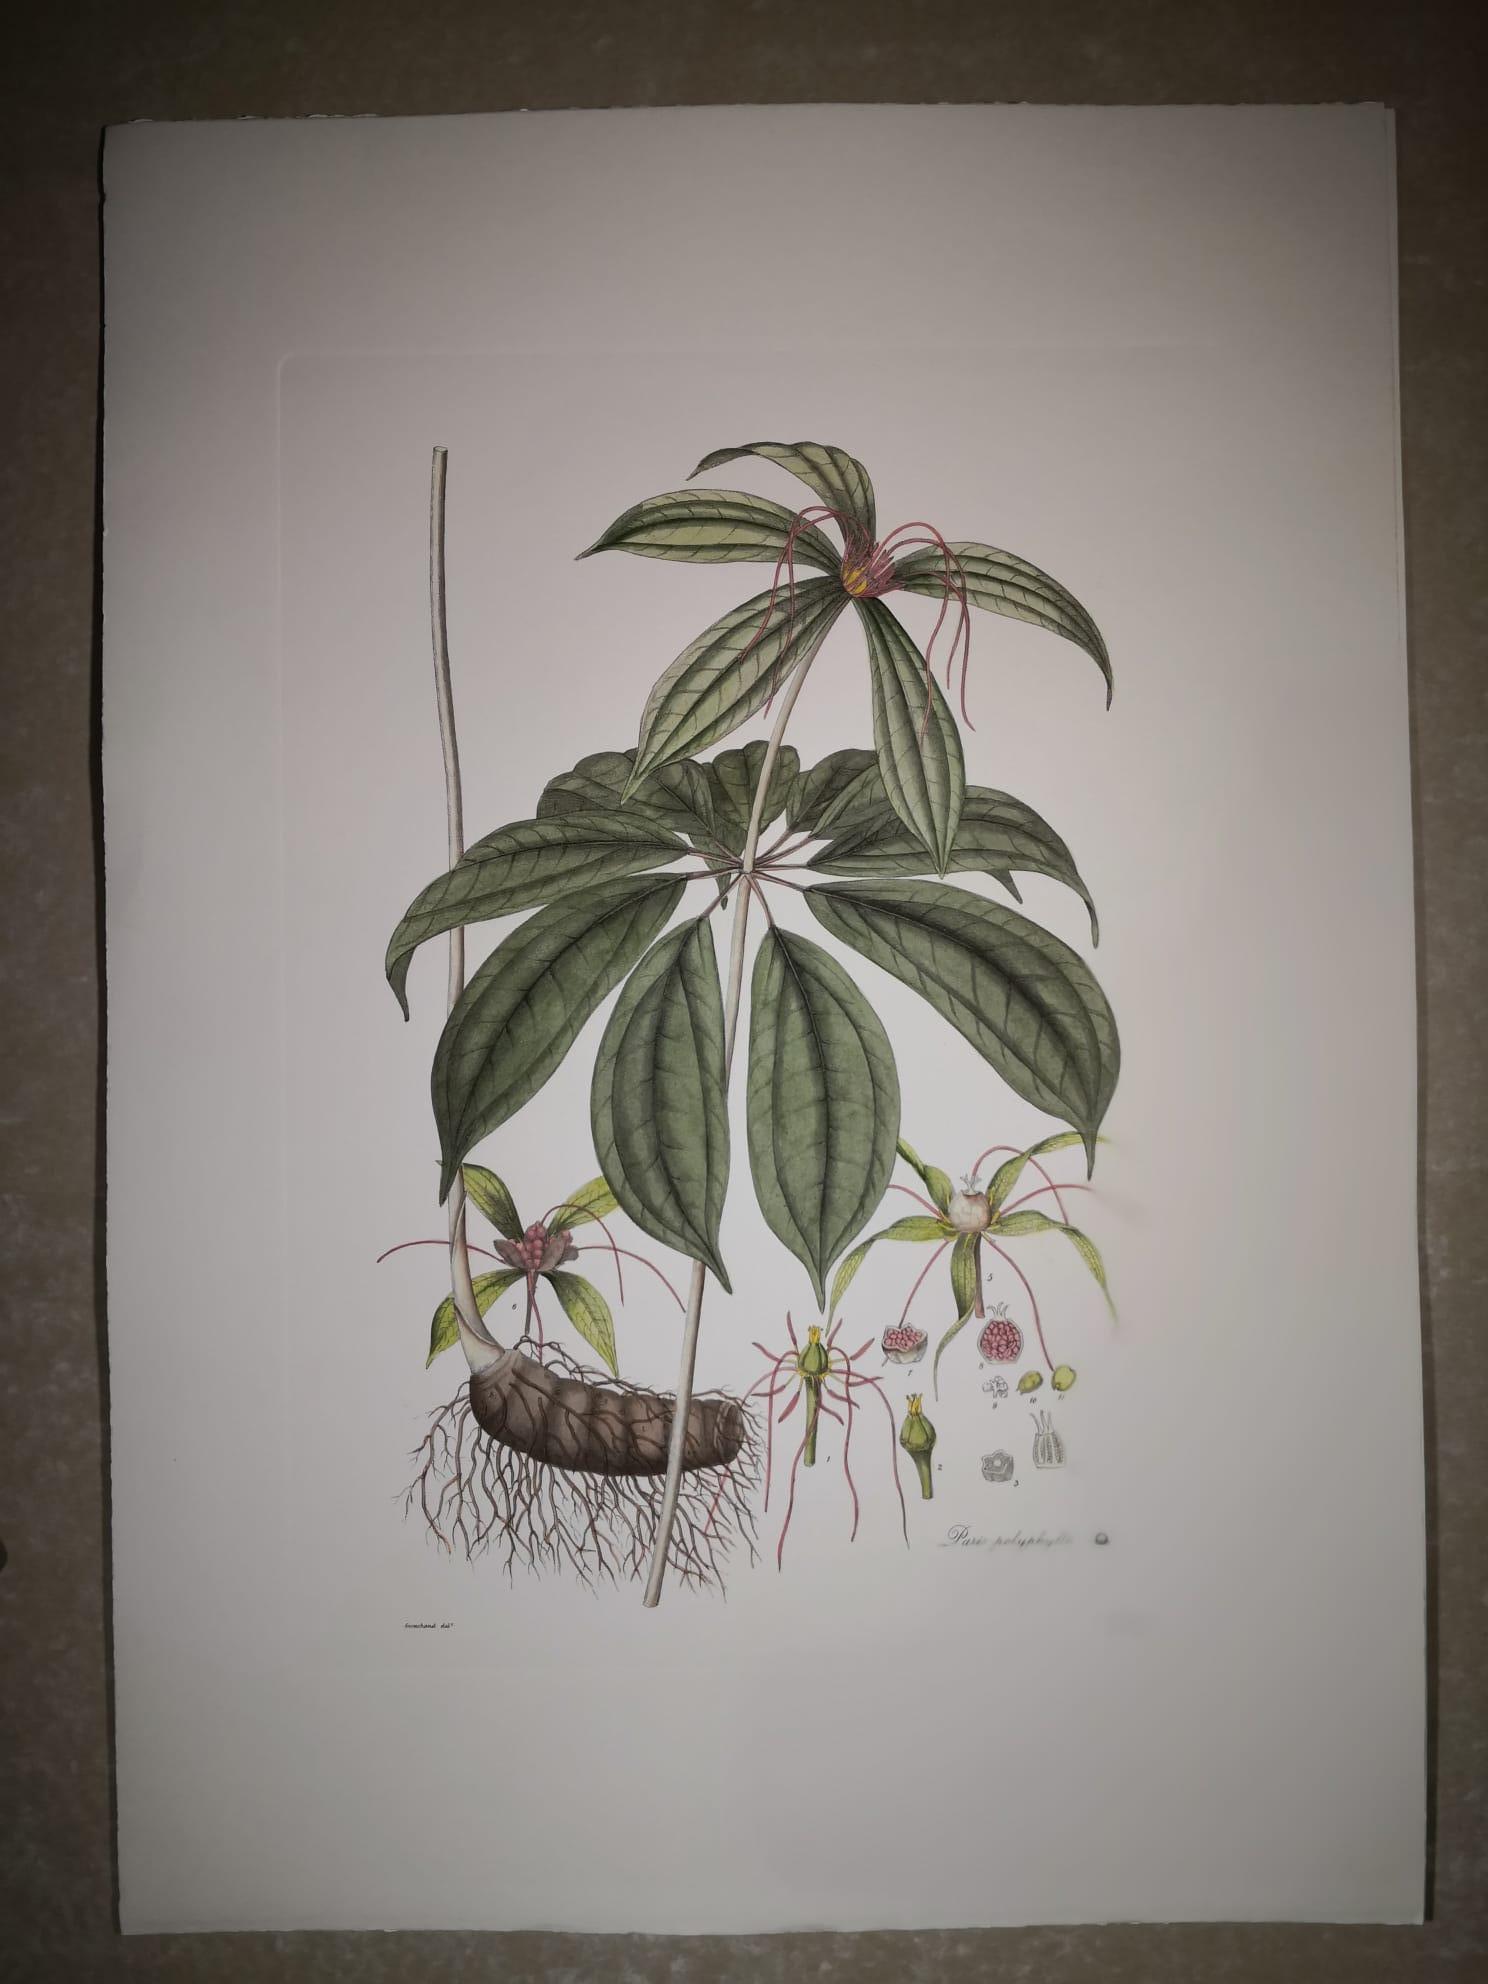 Eleganter handaquarellierter Druck, der Imperatoria Ostruthium, eine blühende Pflanze aus der Familie der Apiaceae, darstellt. 

Dieser Druck im botanischen Stil ist in 4 verschiedenen natürlichen Darstellungen erhältlich, um eine helle und